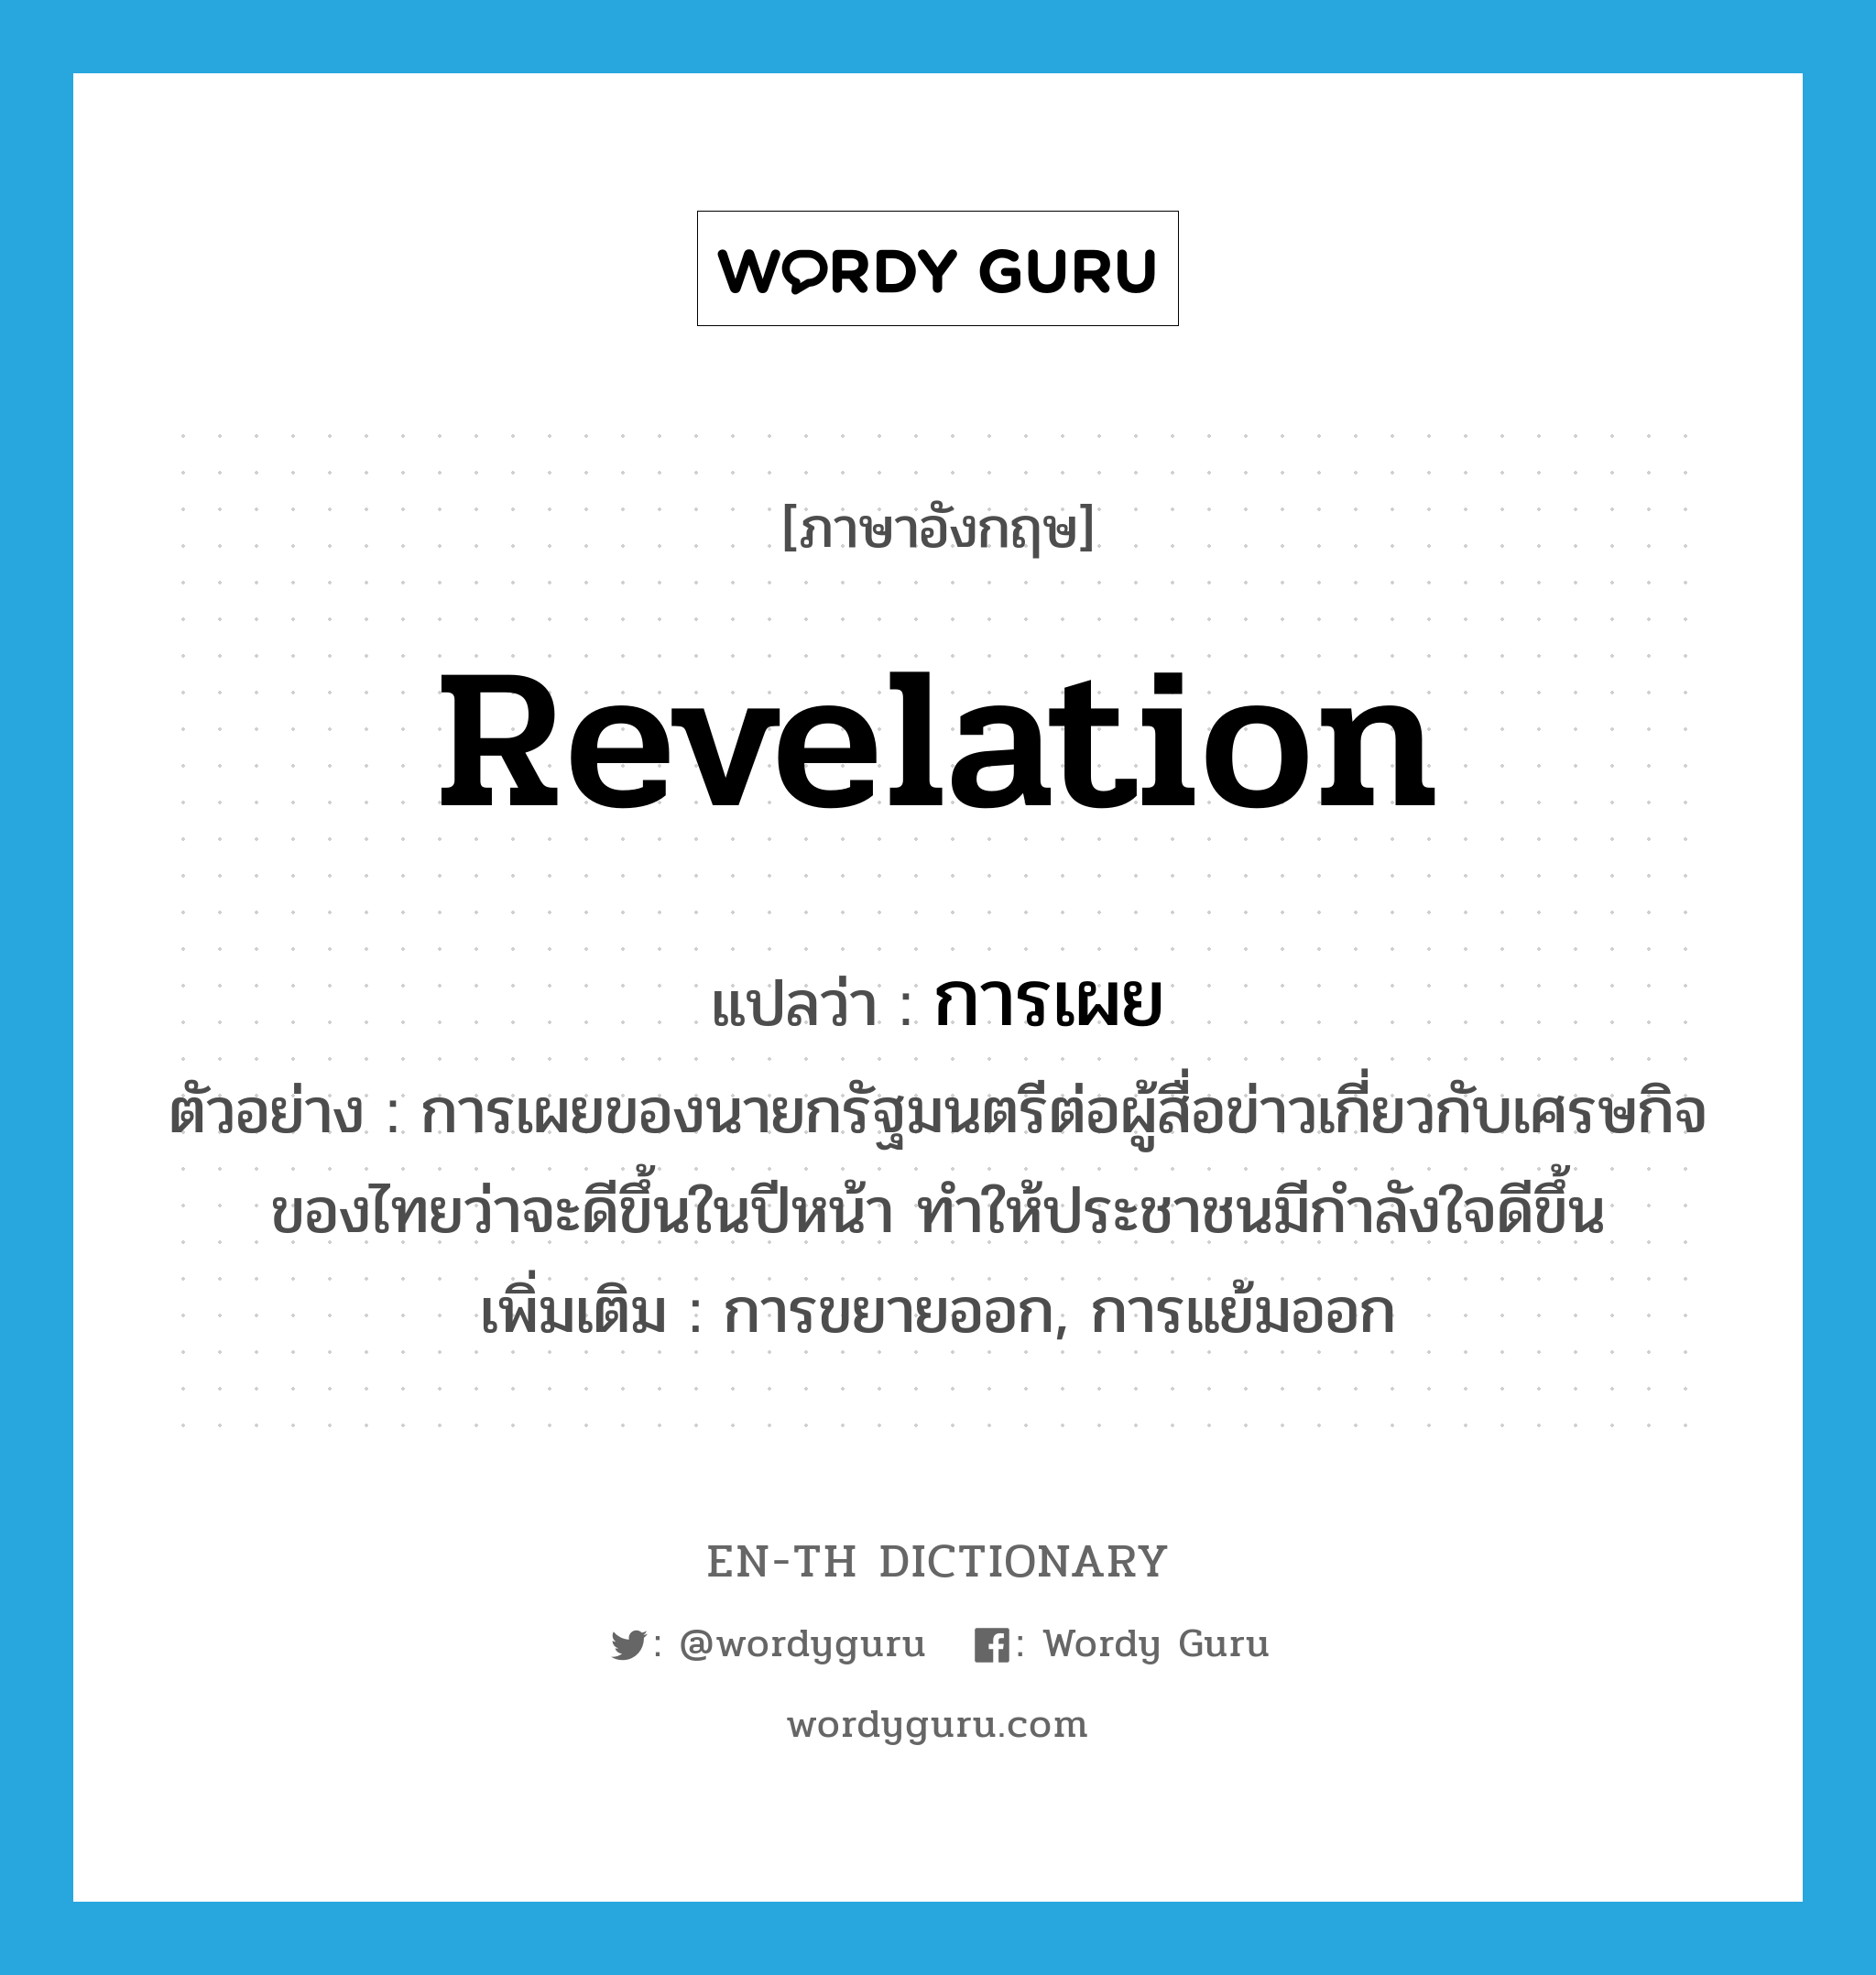 revelation แปลว่า?, คำศัพท์ภาษาอังกฤษ revelation แปลว่า การเผย ประเภท N ตัวอย่าง การเผยของนายกรัฐมนตรีต่อผู้สื่อข่าวเกี่ยวกับเศรษกิจของไทยว่าจะดีขึ้นในปีหน้า ทำให้ประชาชนมีกำลังใจดีขึ้น เพิ่มเติม การขยายออก, การแย้มออก หมวด N